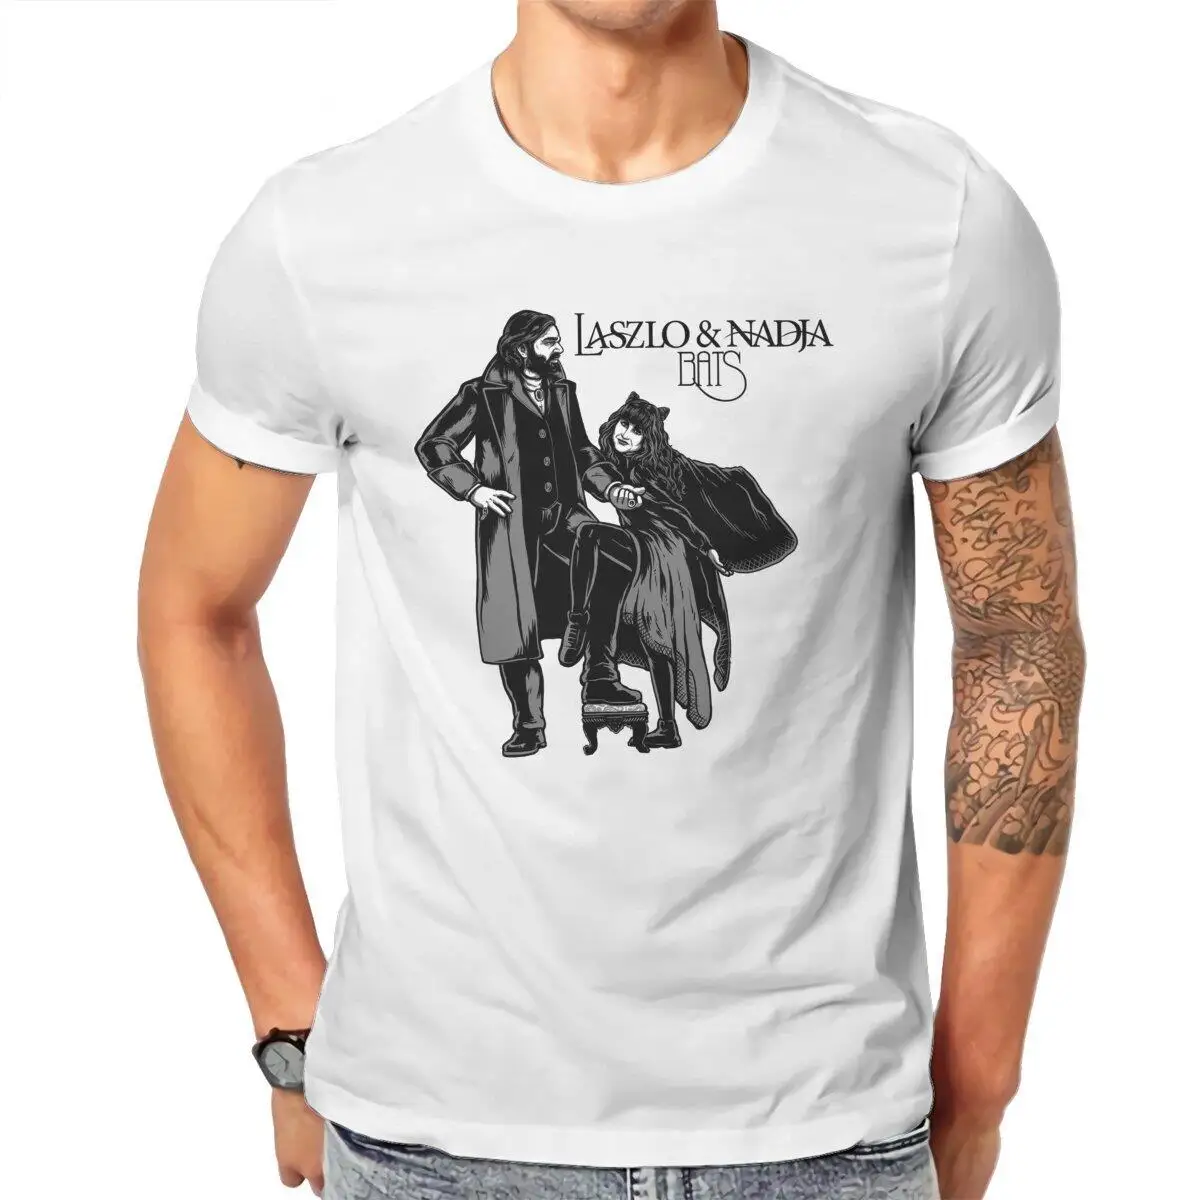 

Laszlo Nadja мужские футболки, что мы делаем в тени, Винтажная футболка с коротким рукавом и круглым вырезом, футболка из 100% хлопка